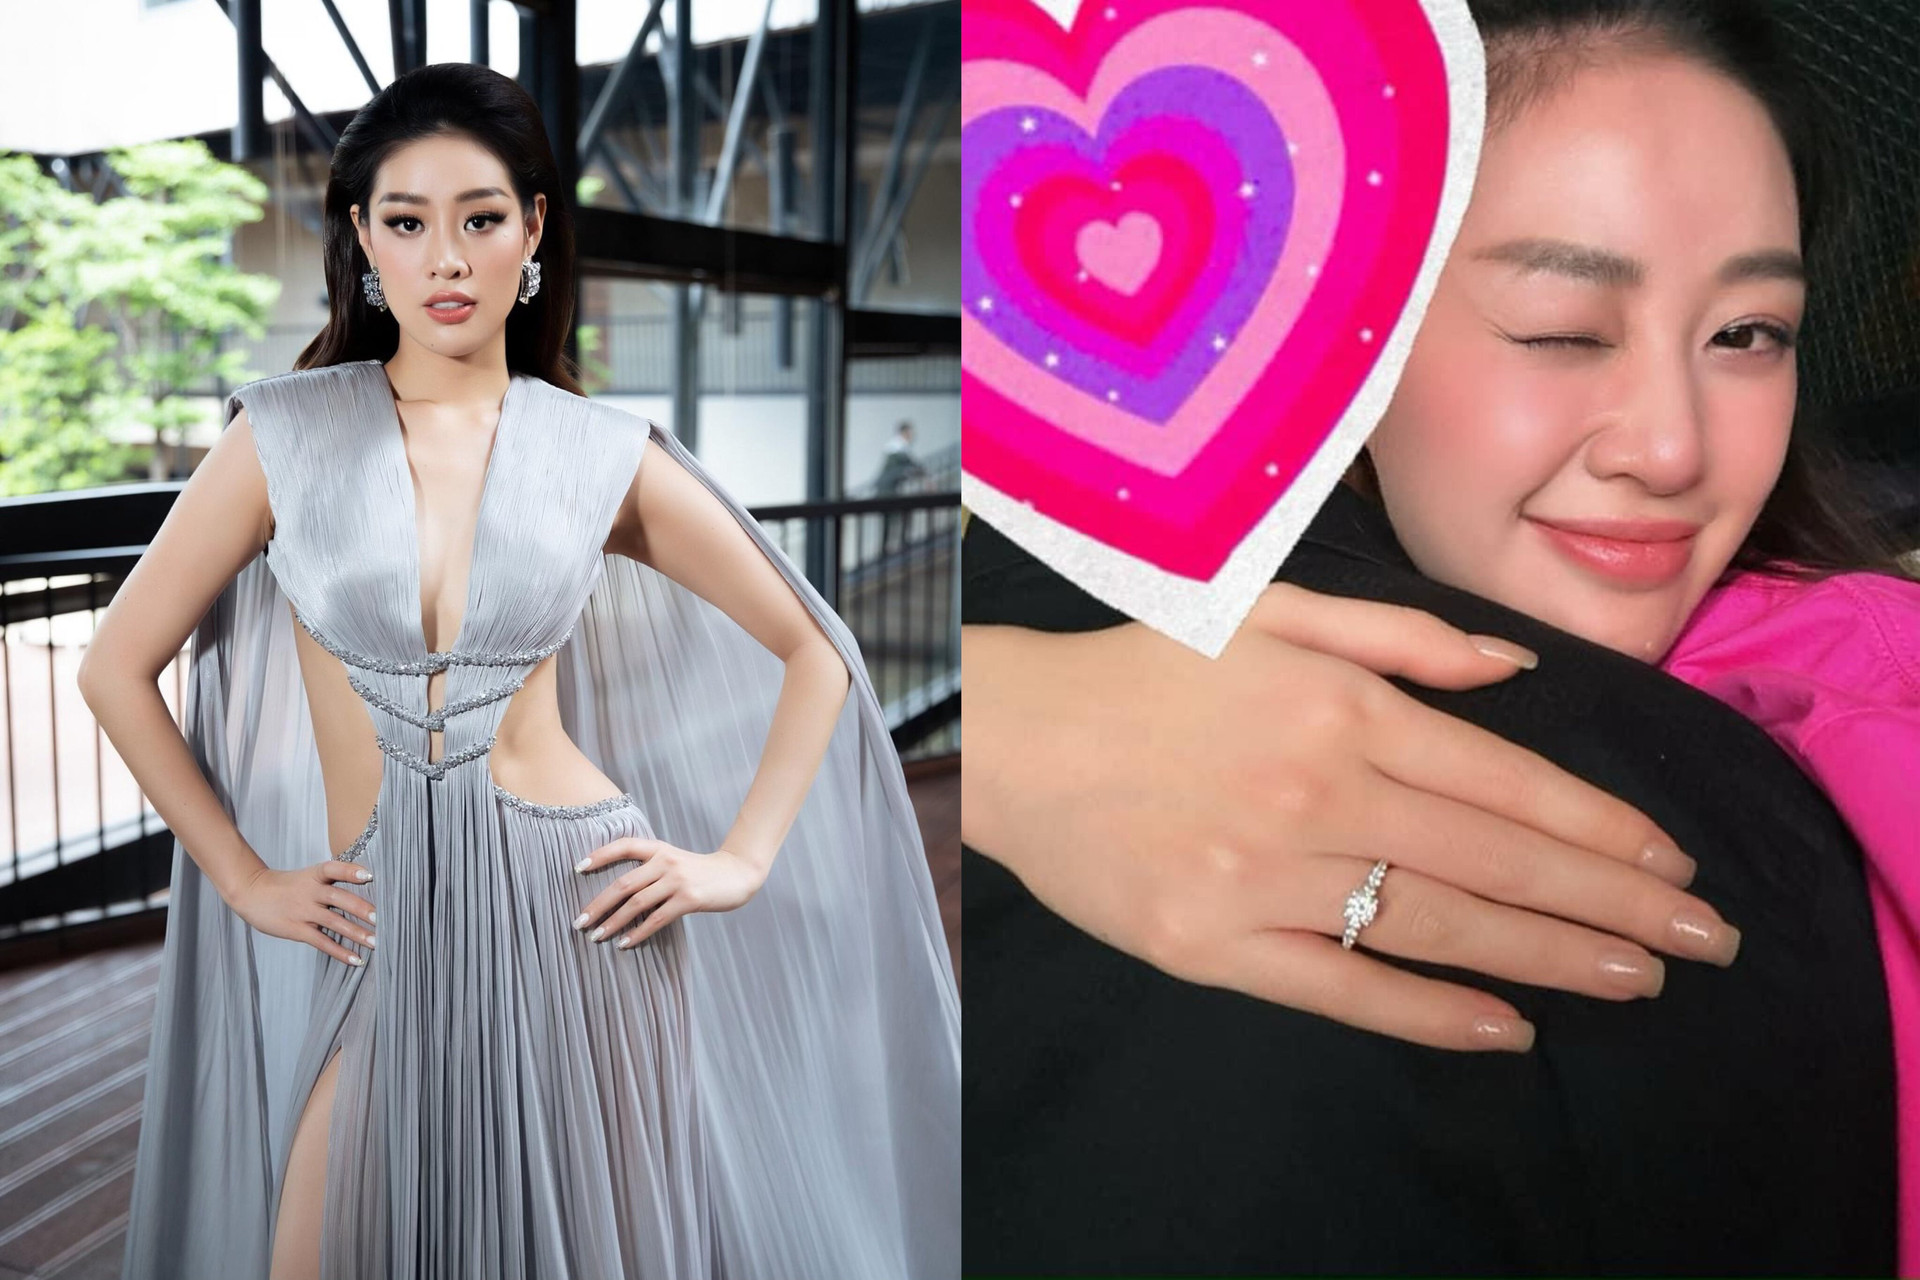 Hoa hậu Khánh Vân vừa được bạn trai cầu hôn.